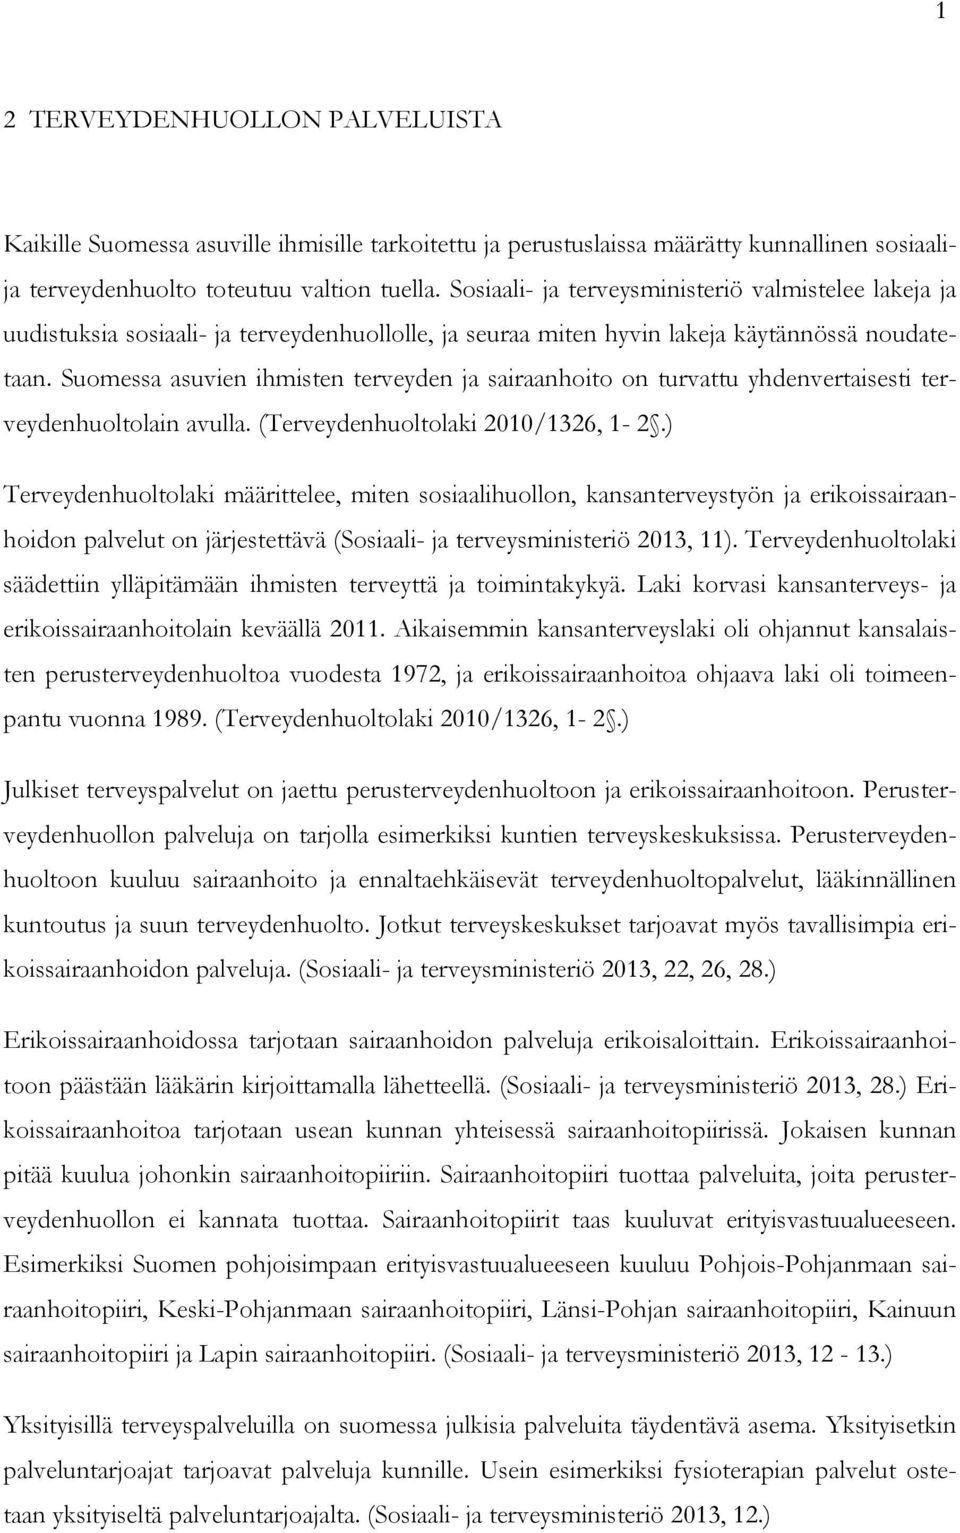 Suomessa asuvien ihmisten terveyden ja sairaanhoito on turvattu yhdenvertaisesti terveydenhuoltolain avulla. (Terveydenhuoltolaki 2010/1326, 1-2.